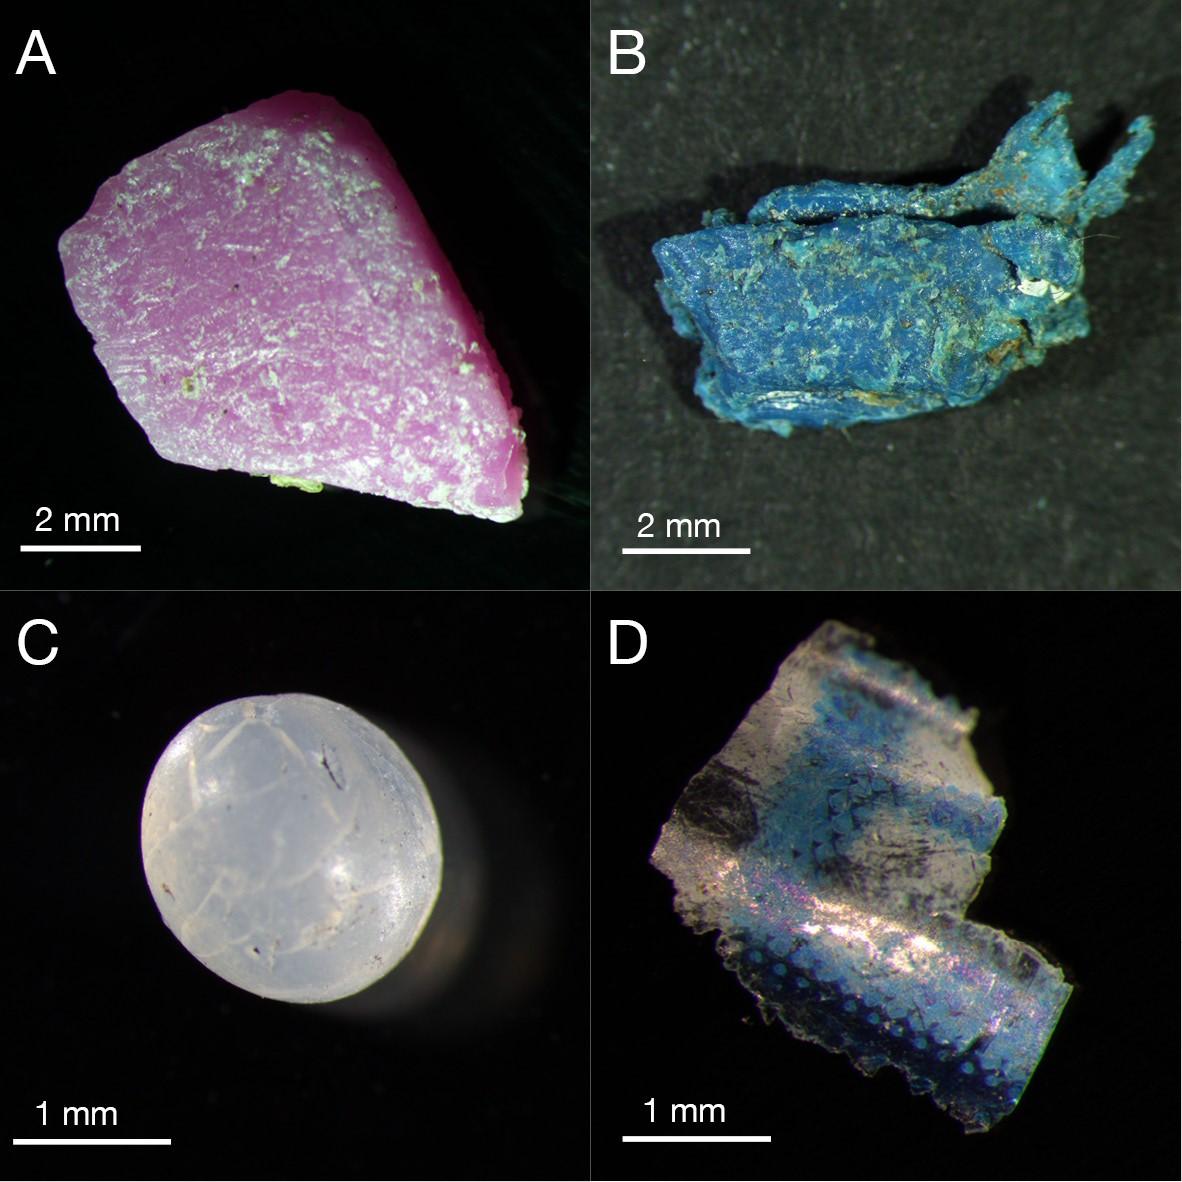 Detaildarstellung von Beispielen für Mikroplastik am Strand der Malediven-Insel Vavvaru